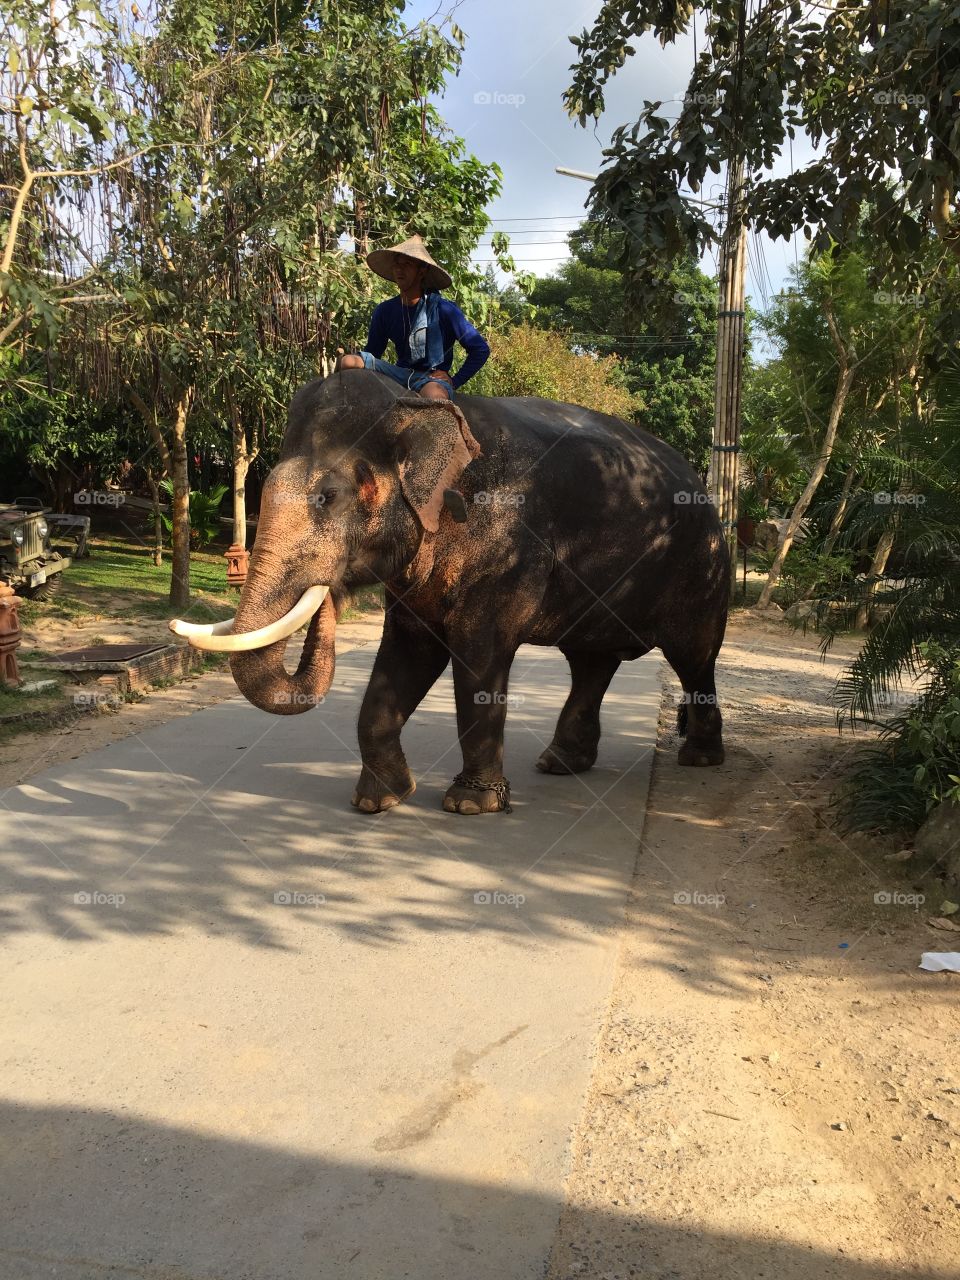 Elephant tracking